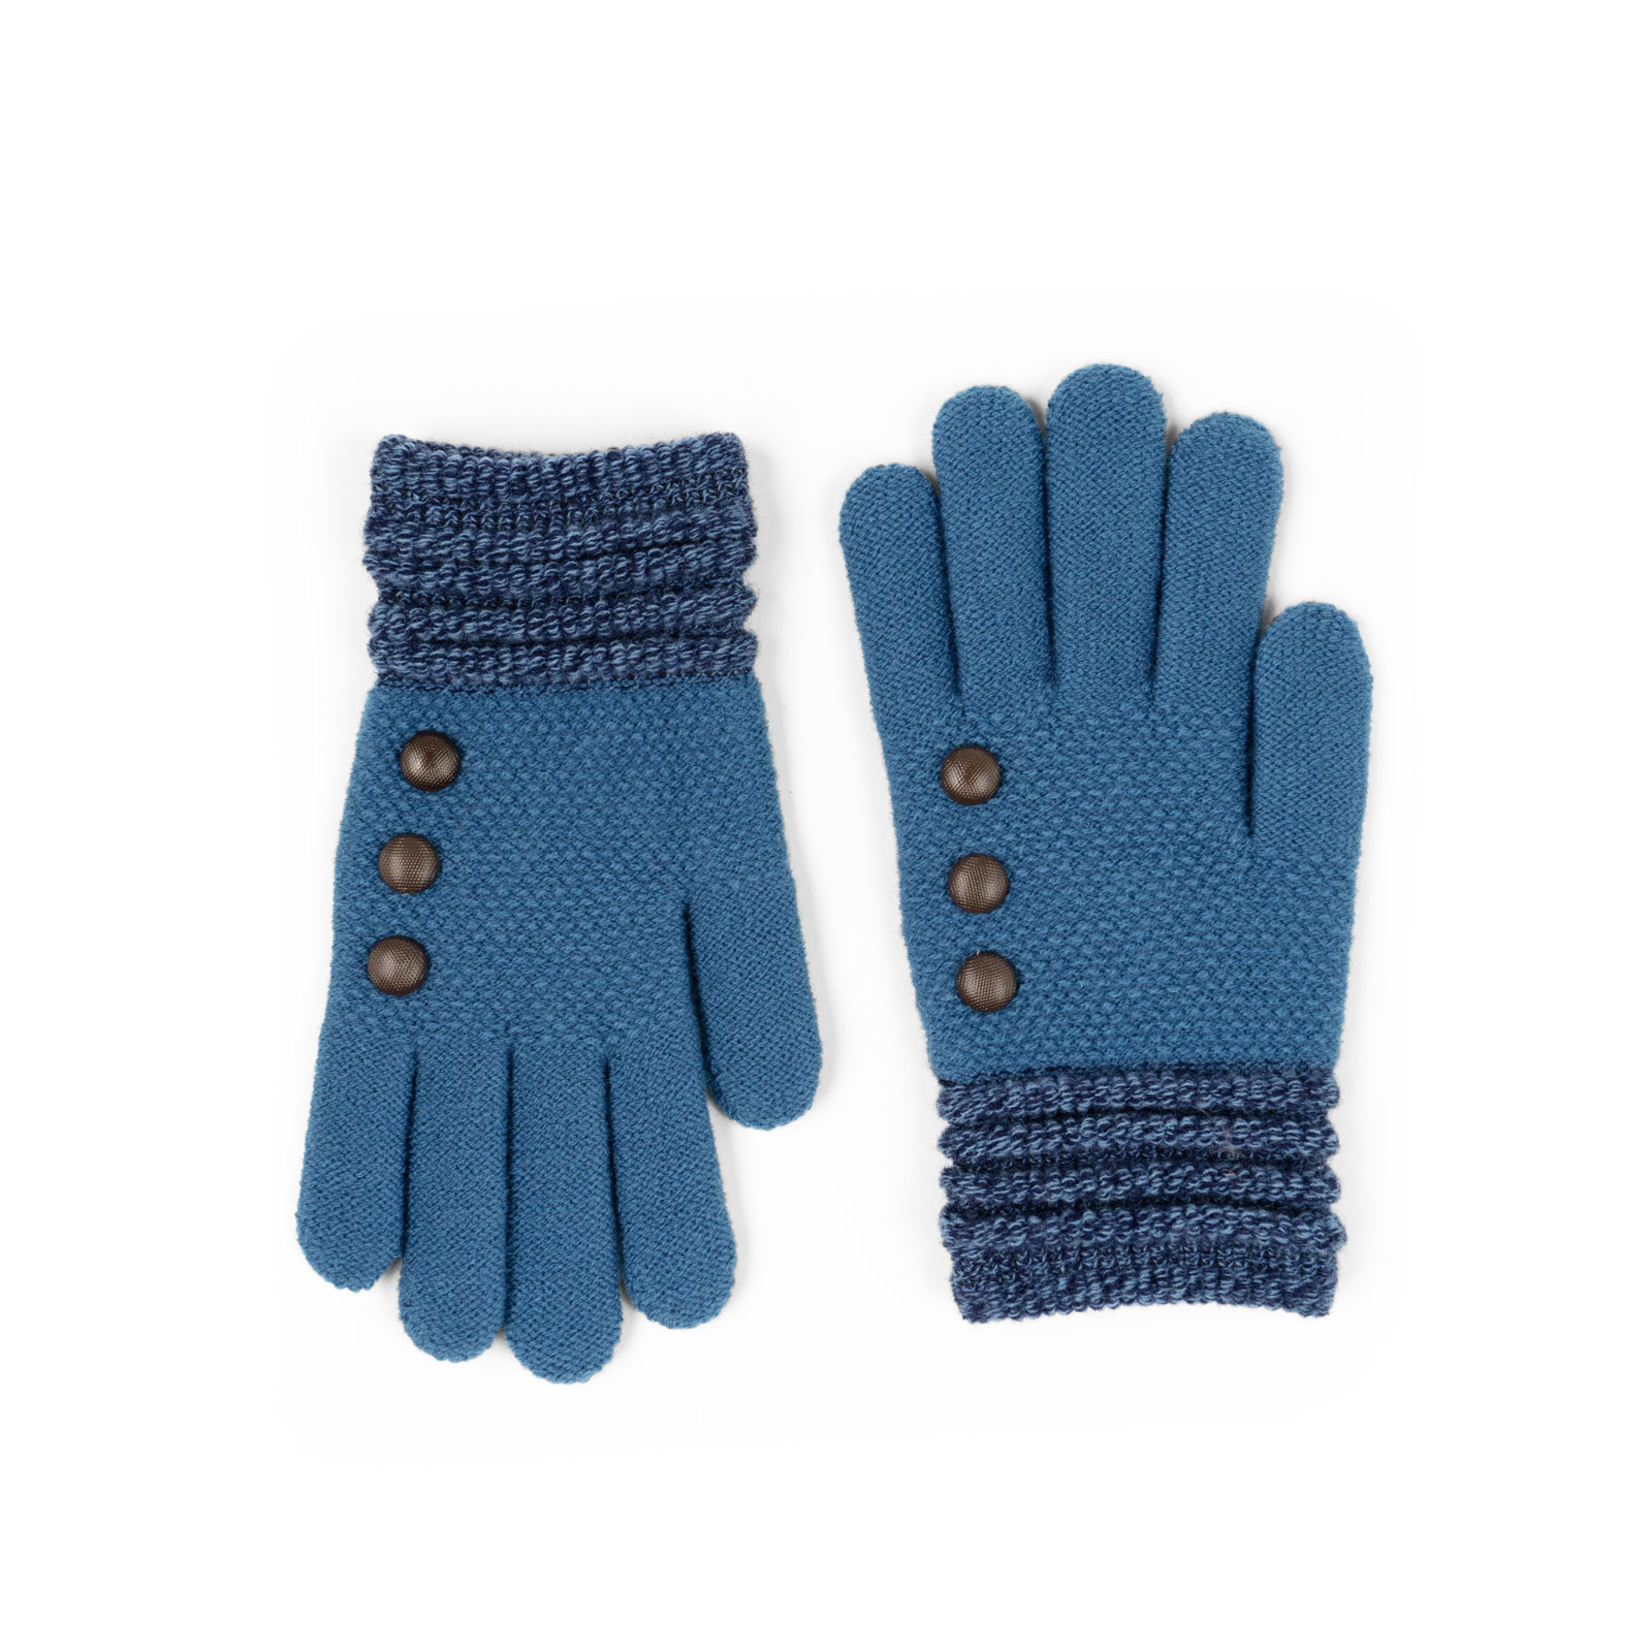 Britt's Knits Britt’s Knits Originals Gloves Blue